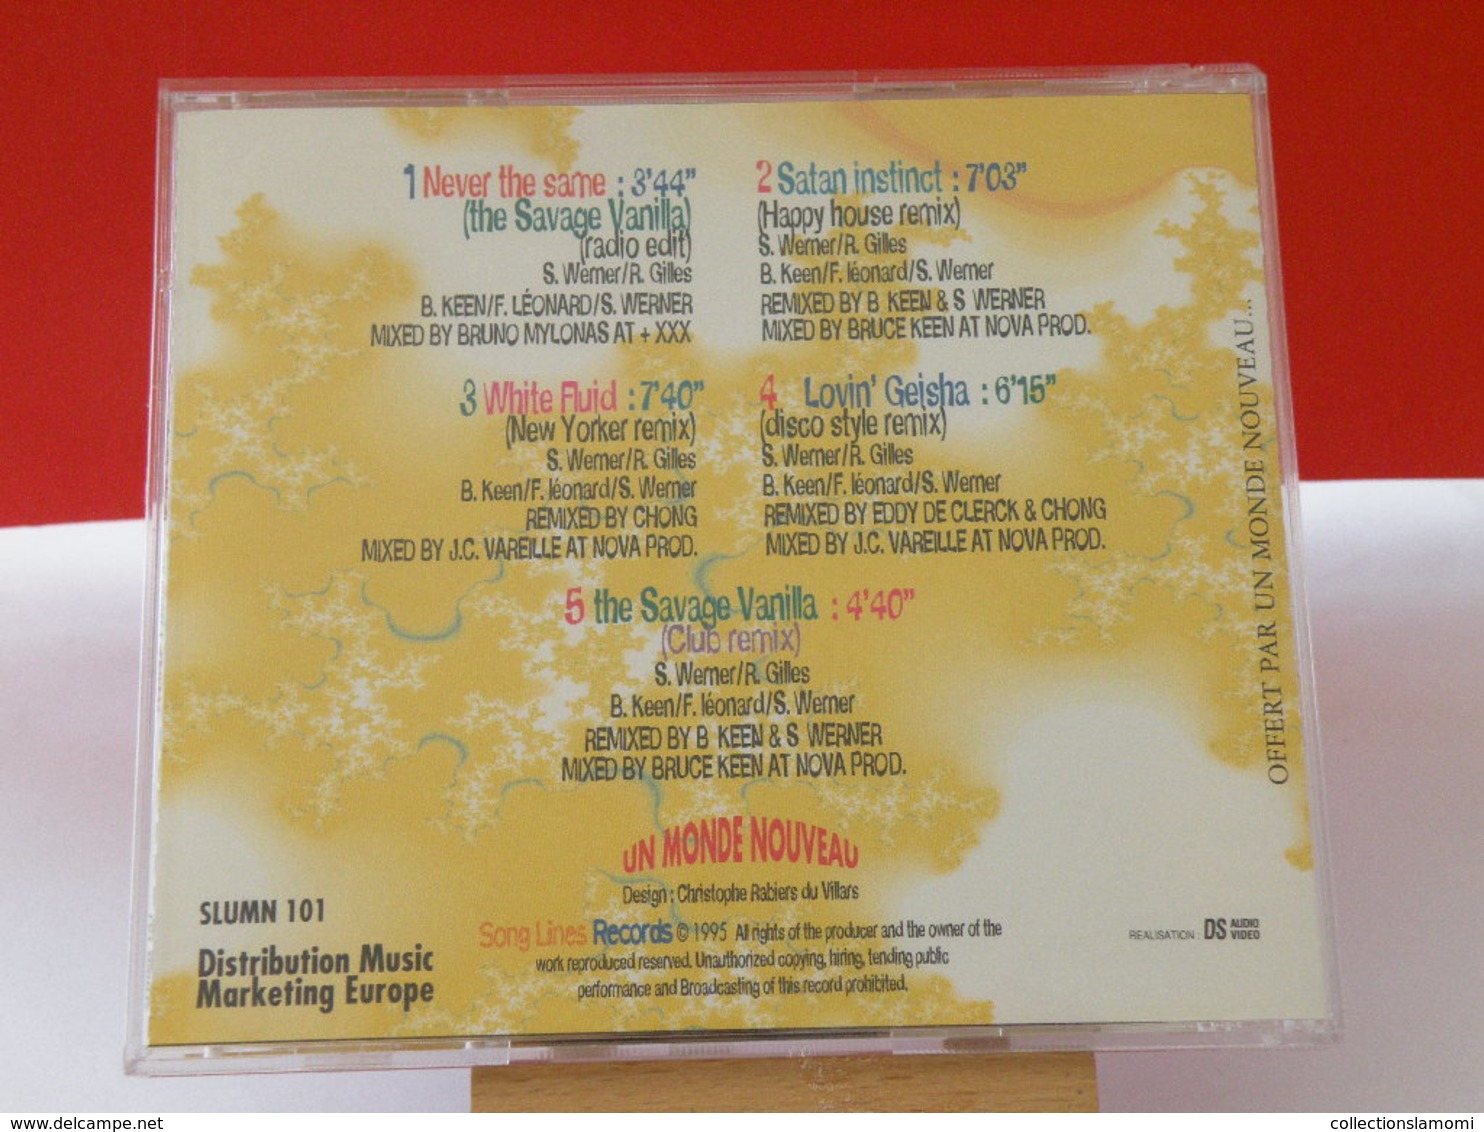 U.M.N. - (Titres Sur Photos) - CD 1995 - Musiques Du Monde